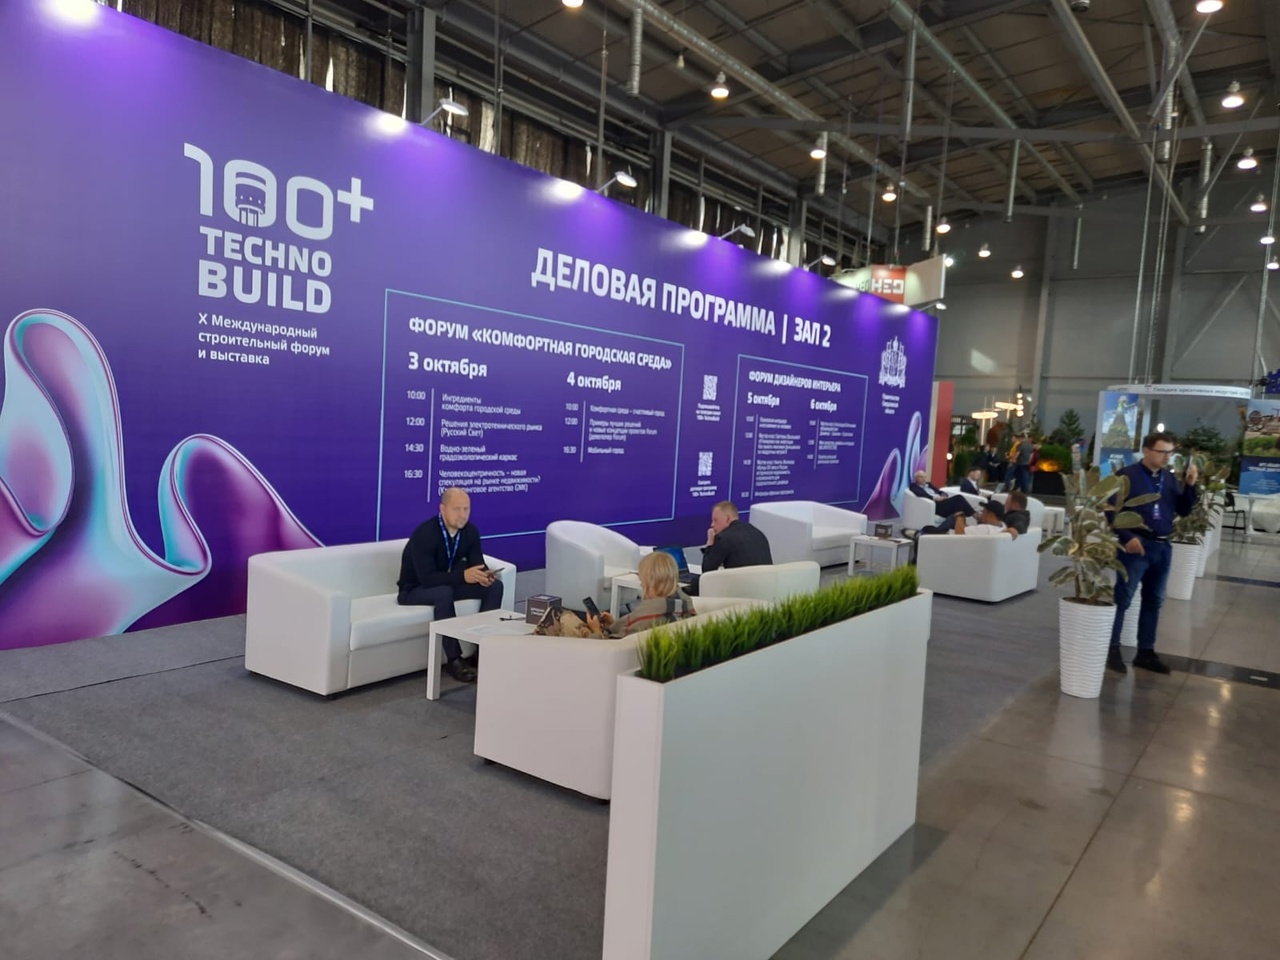 АО «Златмаш» приняло участие в Международном Форуме и выставке 100+ TechnoBuild.